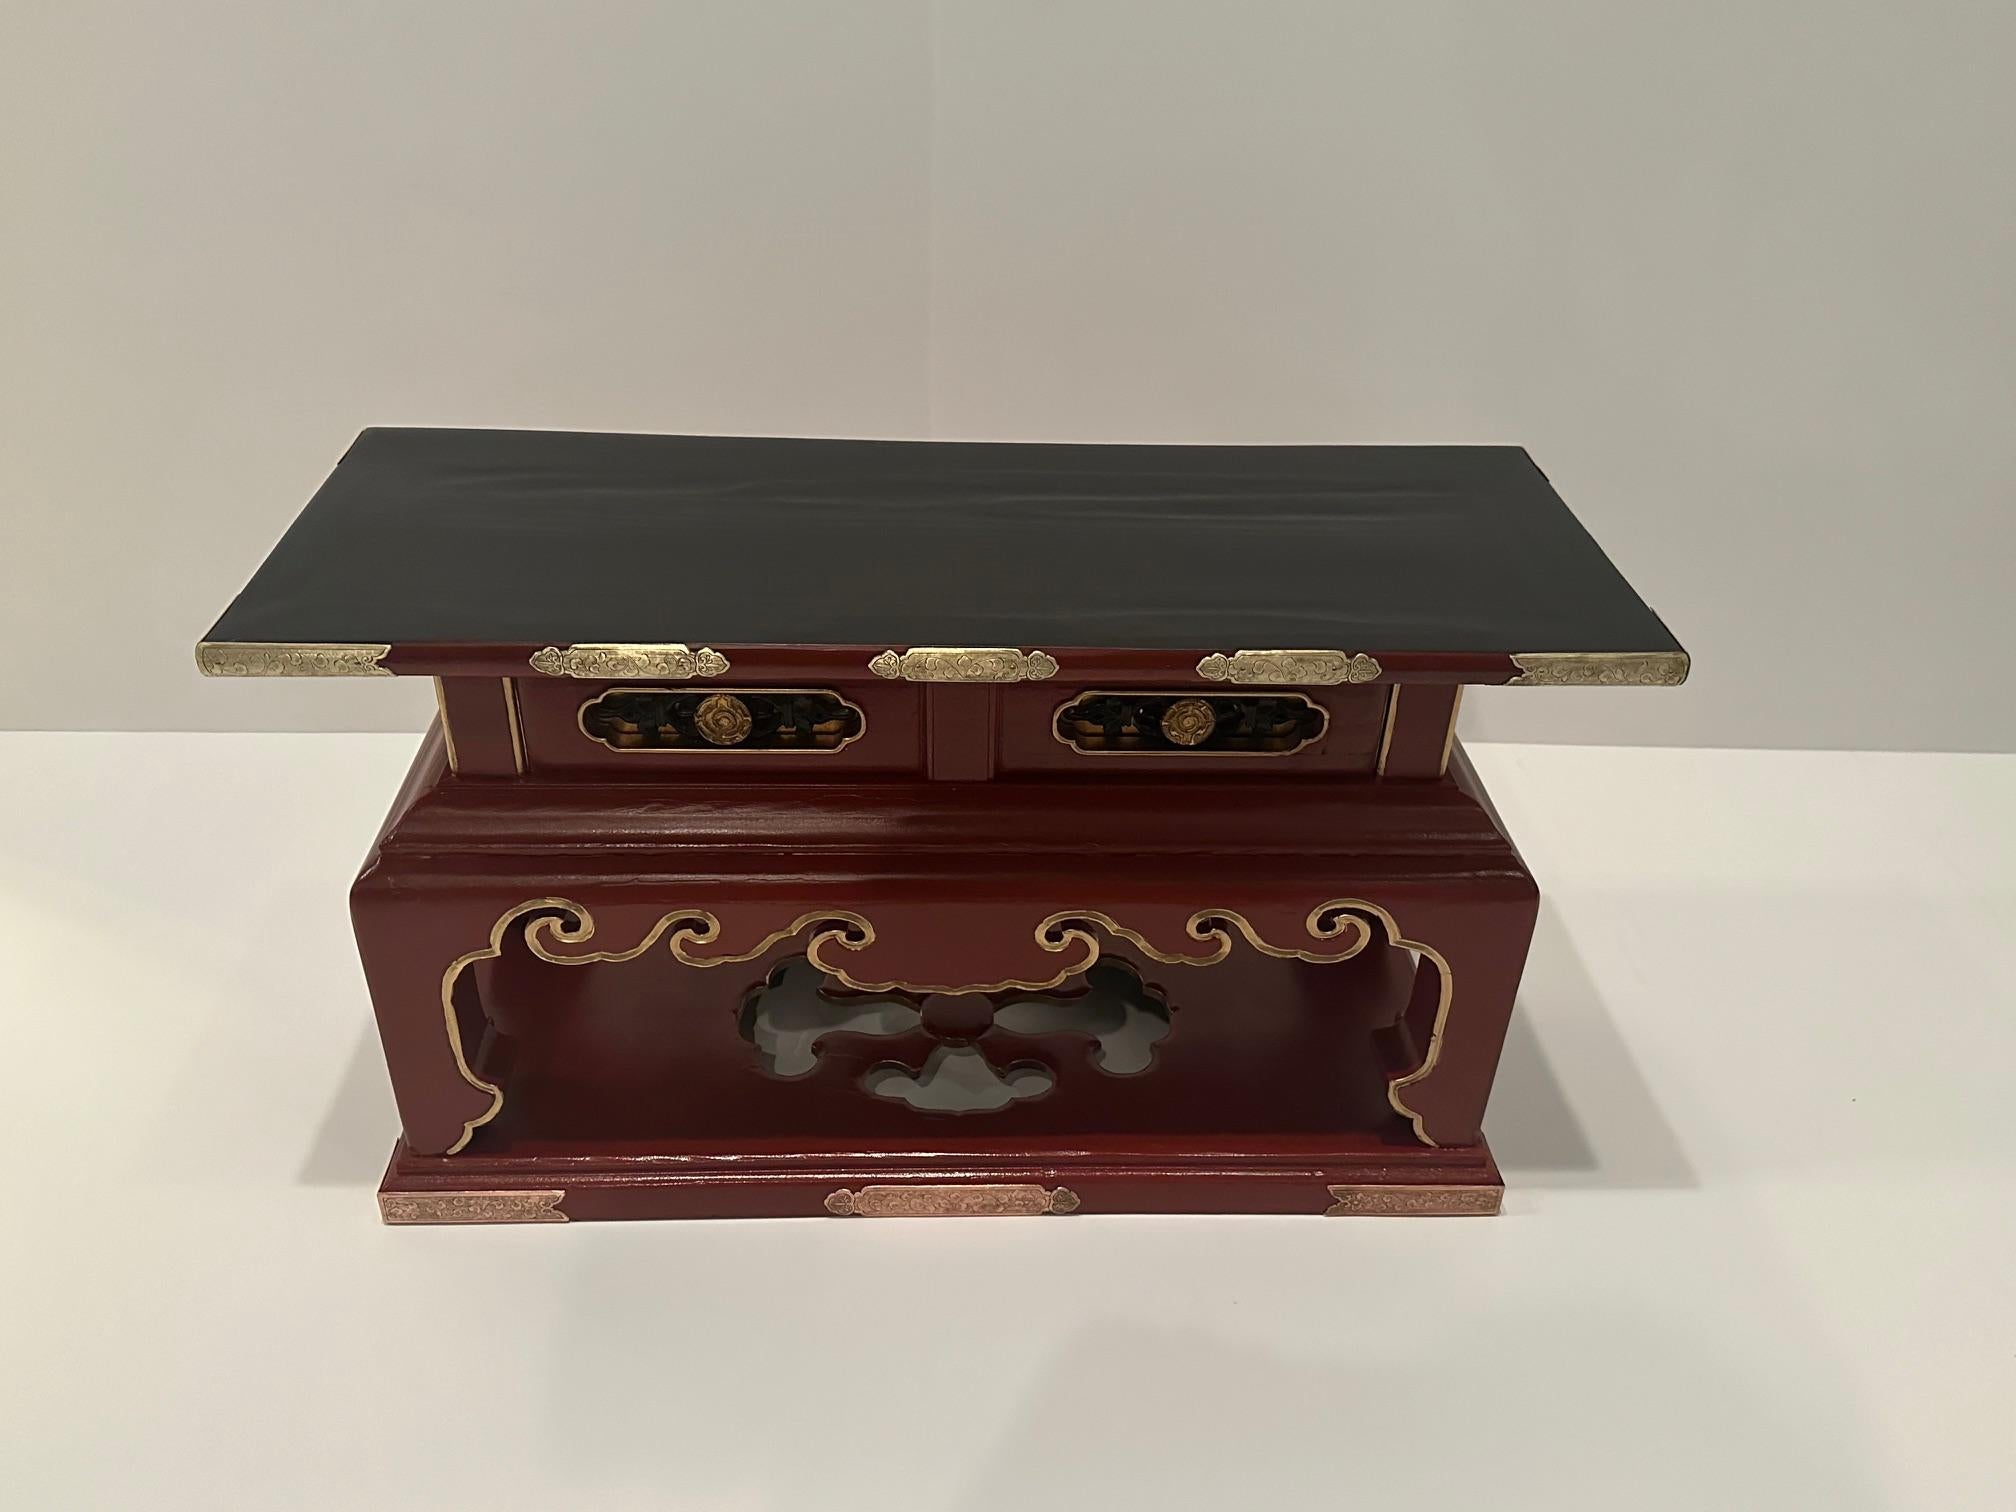 Auffallend schwarz und rot lackierter chinesischer Vintage-Altartisch mit schönen Messing- und Kupferakzenten und wunderbarer Form mit einer Schublade,  Ein fabelhafter Akzenttisch.